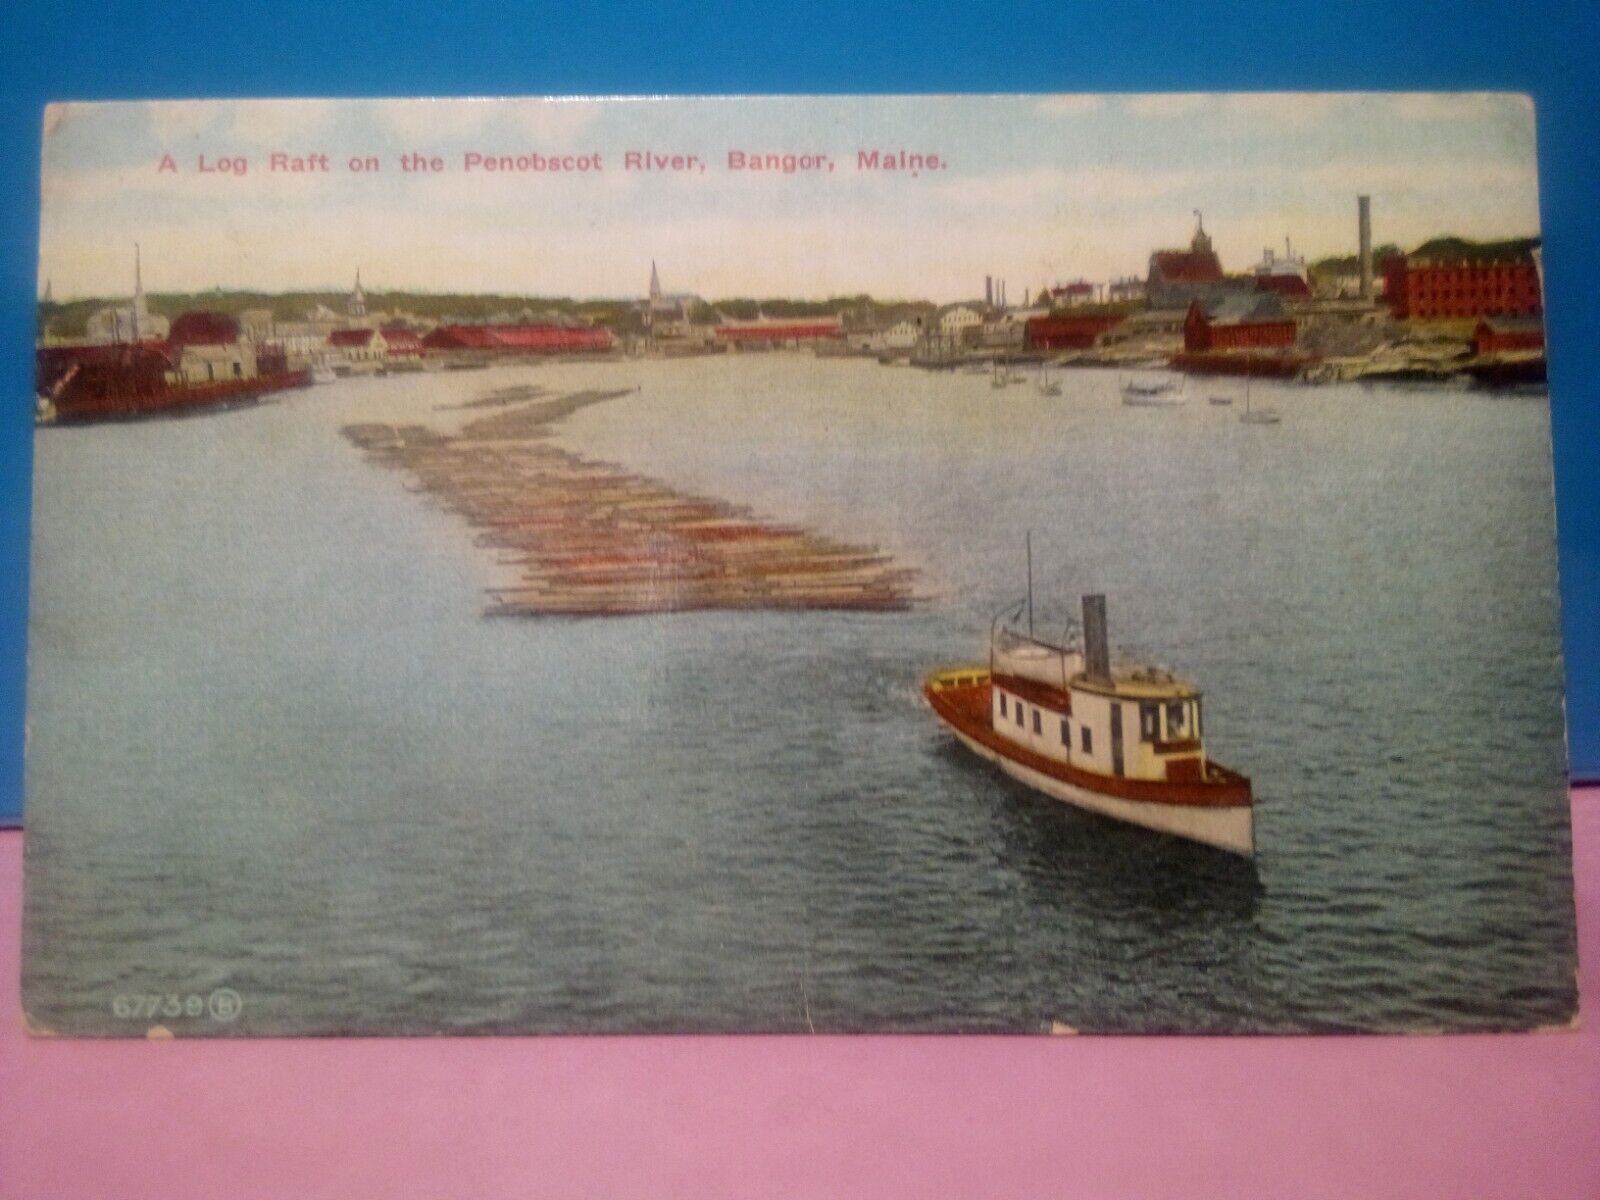 log raft Penobscot River bangor Maine logging tugboat 1913